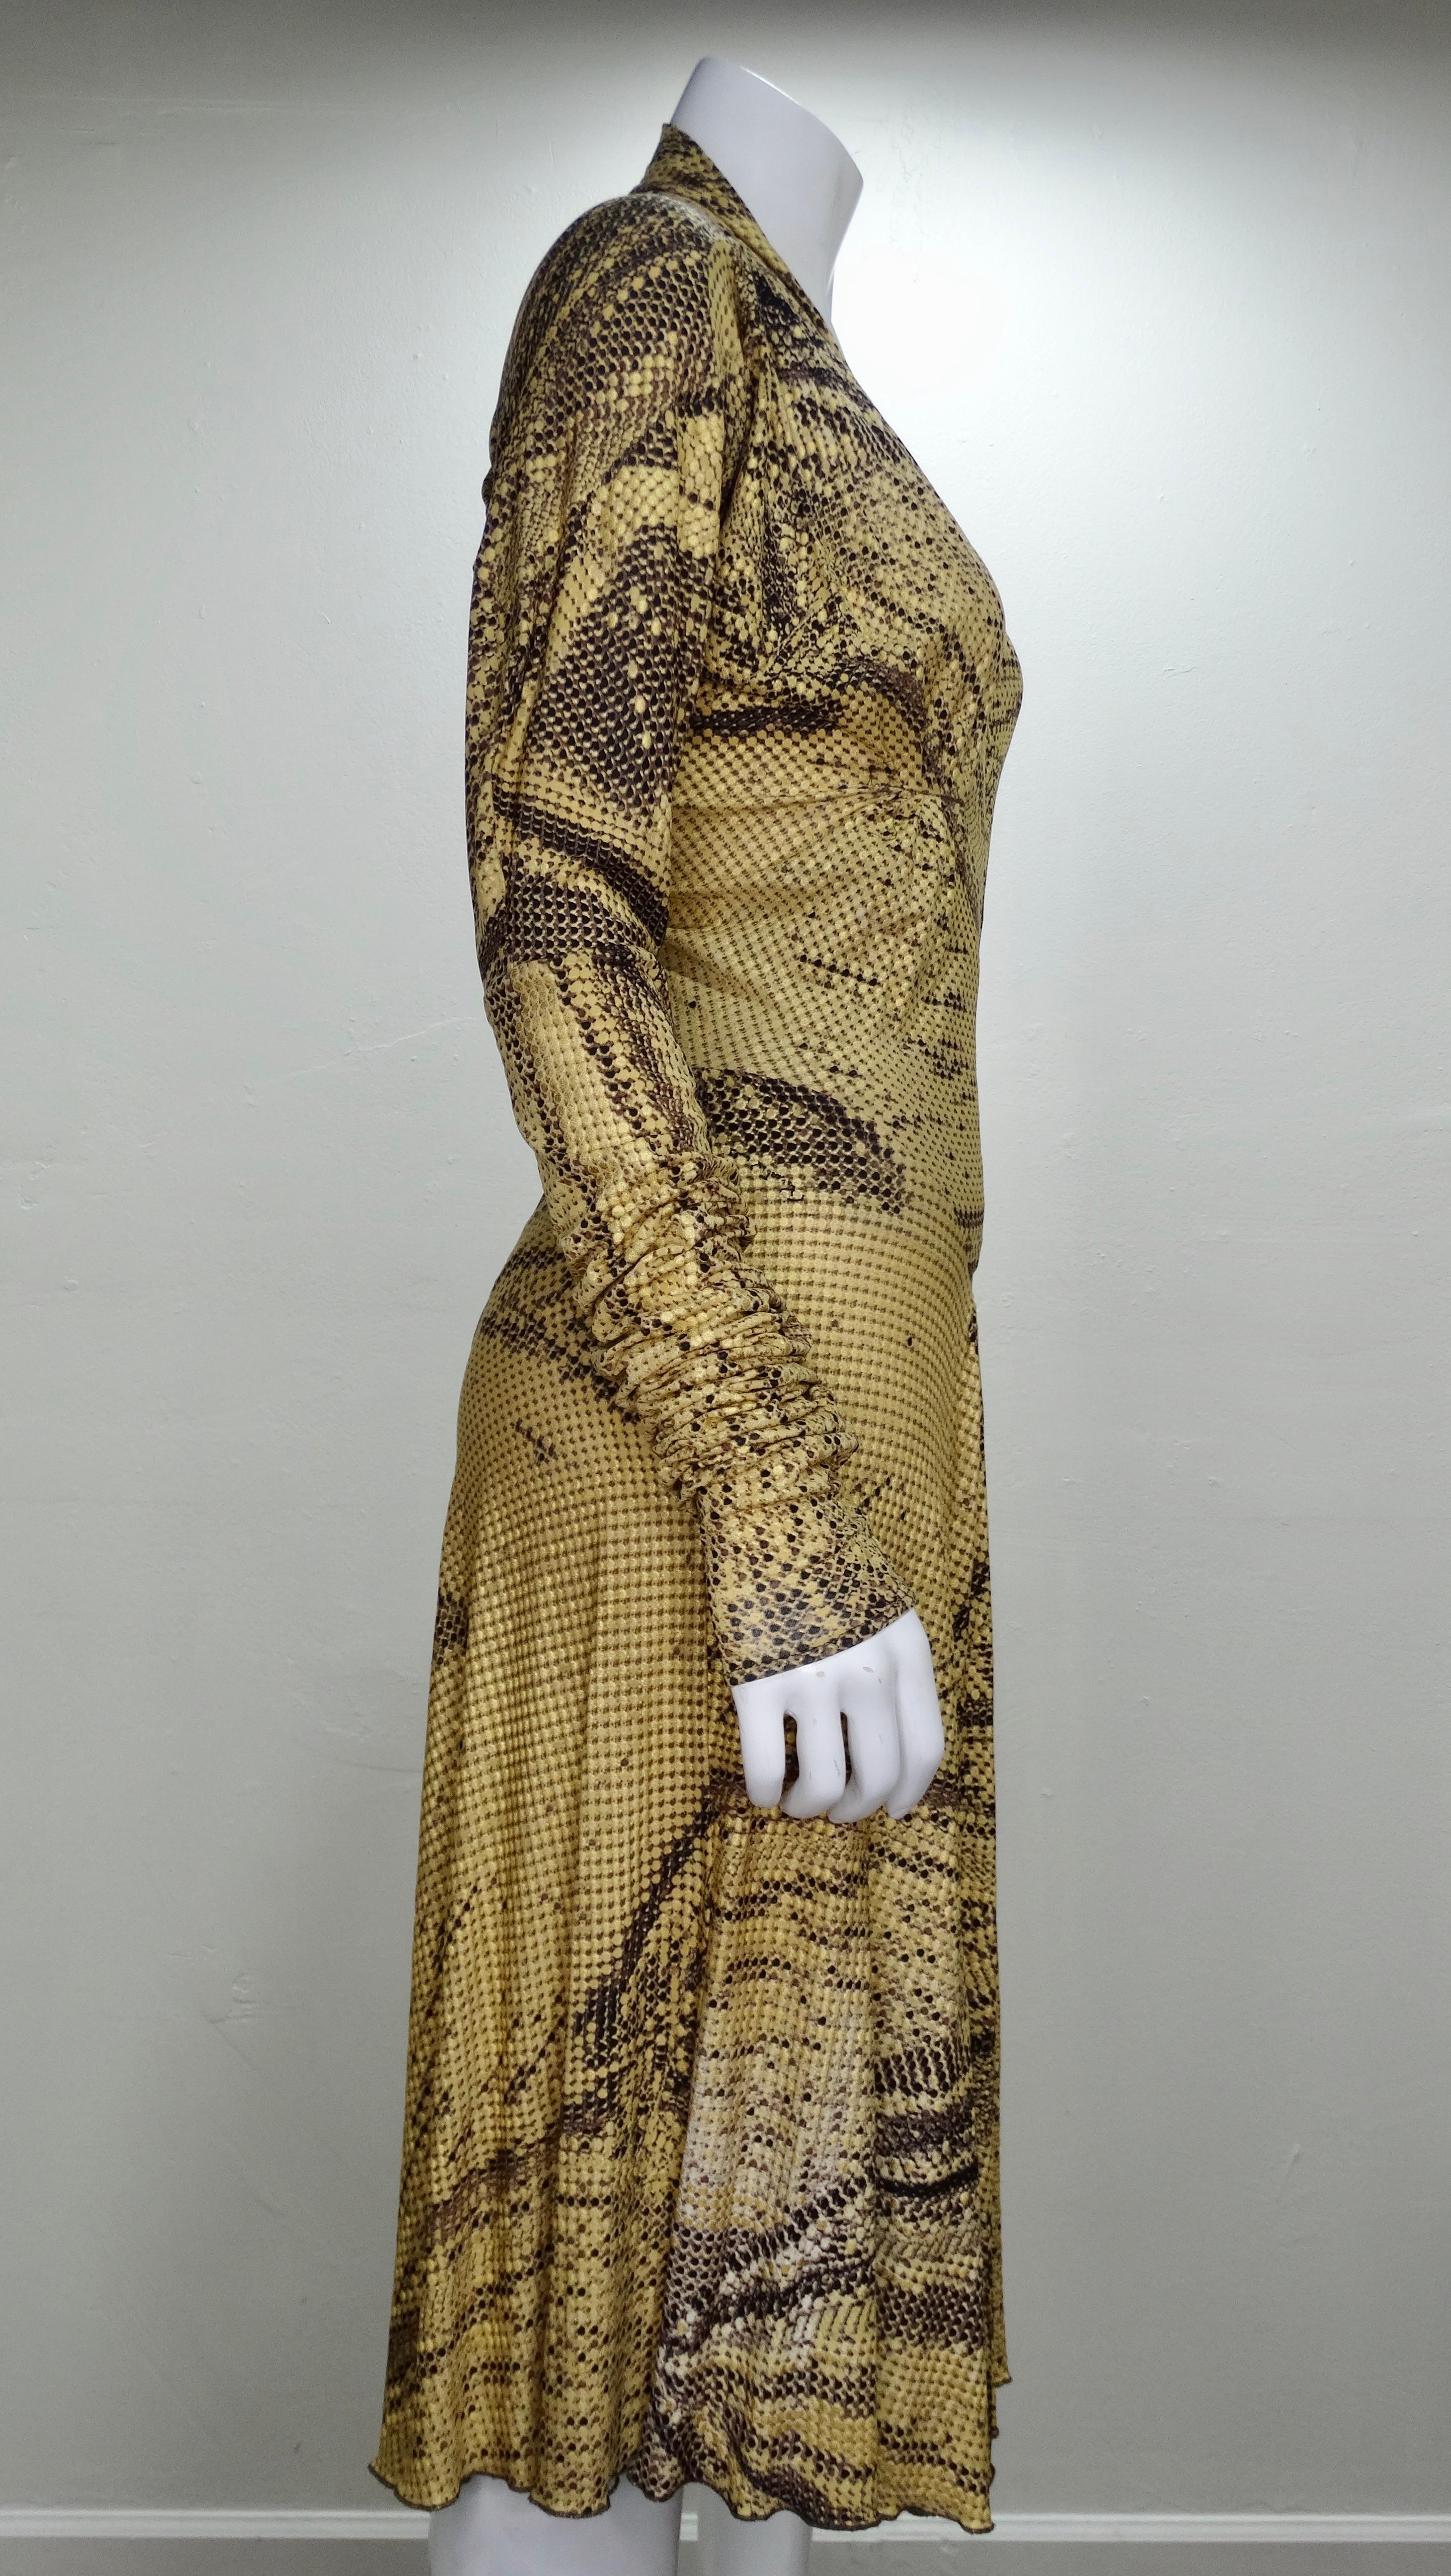 Incroyable robe des années 2000 de l'emblématique designer Roberto Cavalli ! Robe moulante à imprimé serpent avec finition métallique dorée, fermeture éclair dorée sur le devant, jupe légèrement plissée offrant un grand mouvement et manches longues